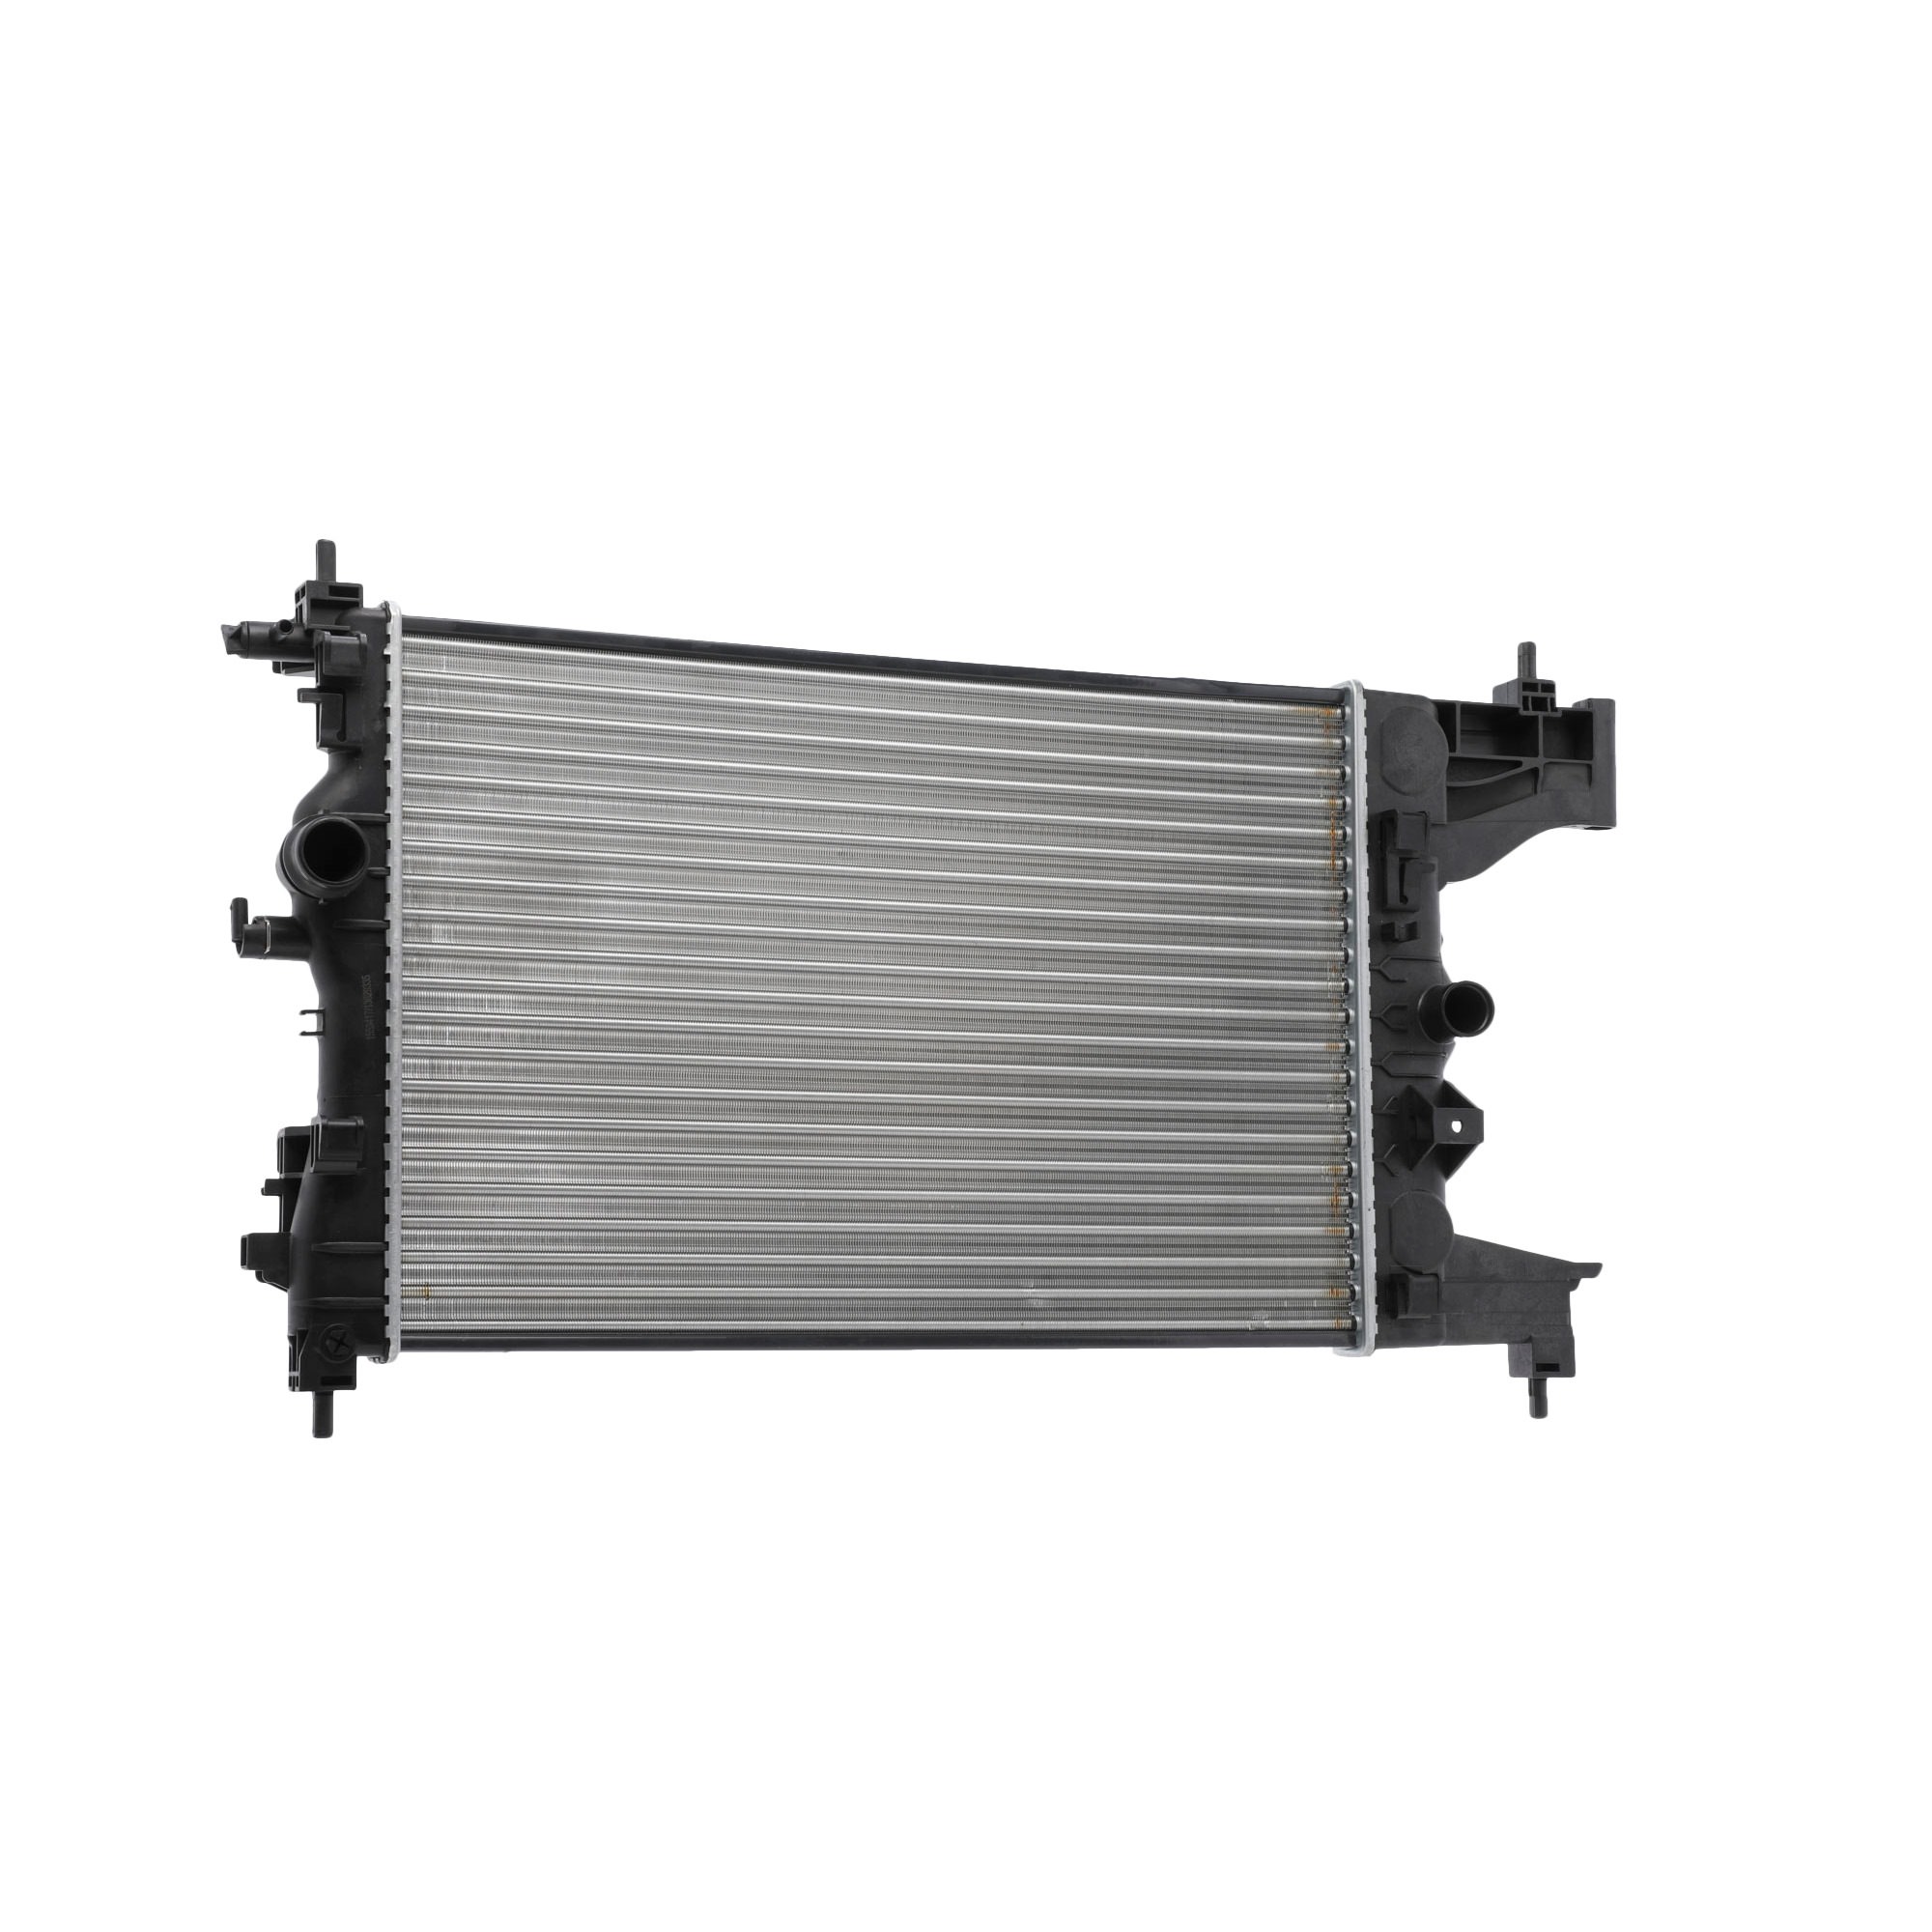 RIDEX 470R0123 Engine radiator Aluminium, Plastic